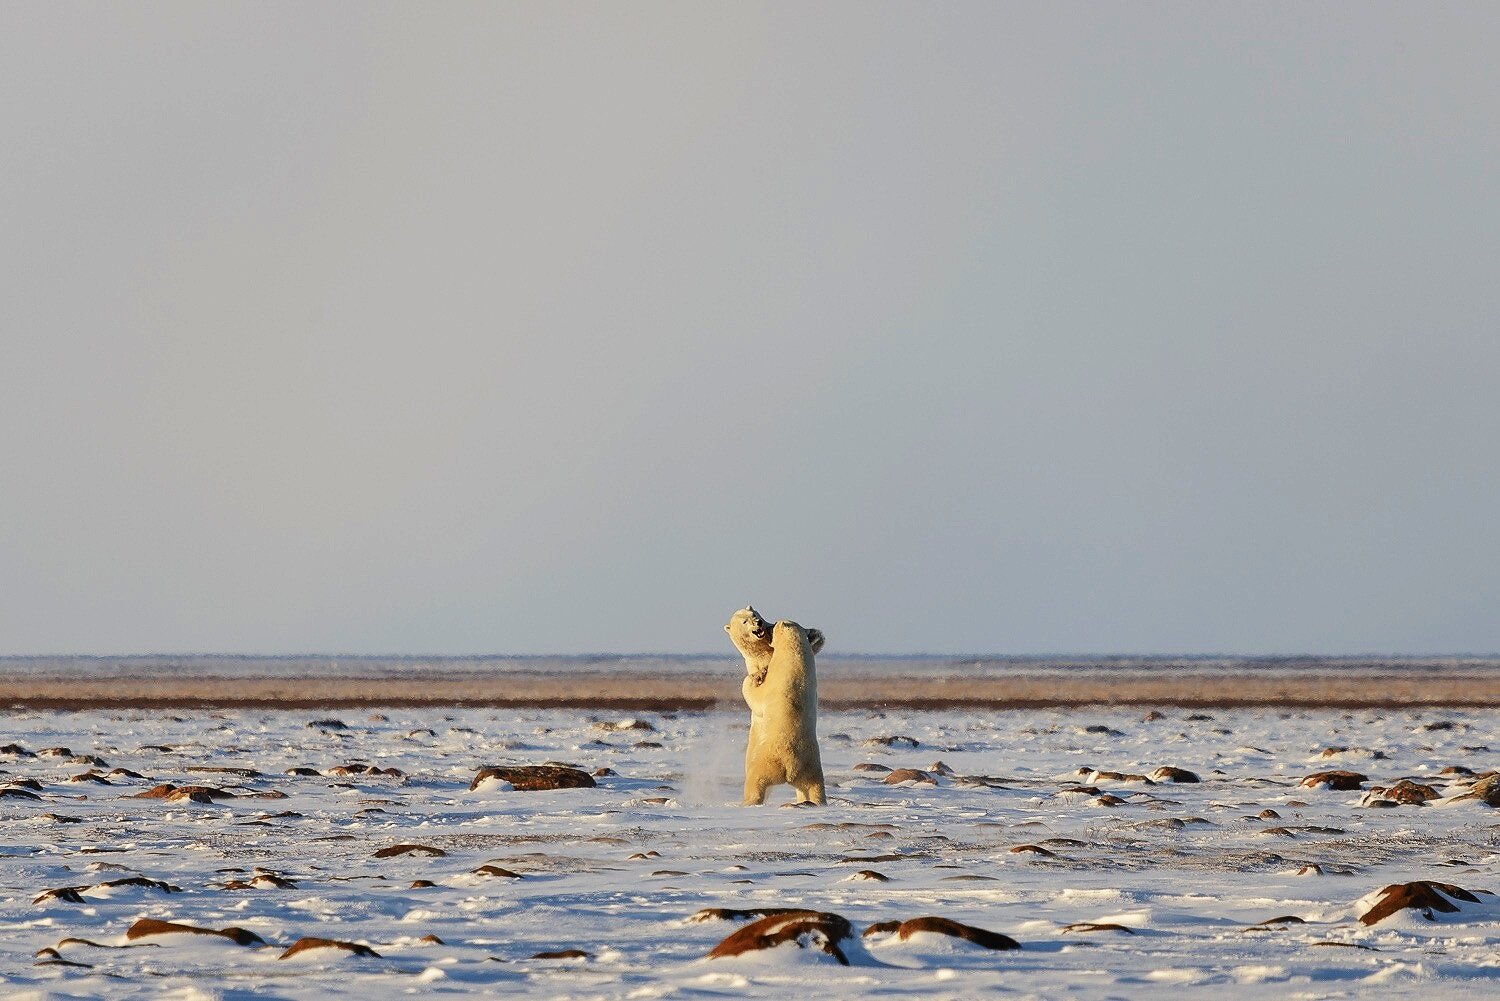 Male Polar Bears Sparring on the Tundra 3 